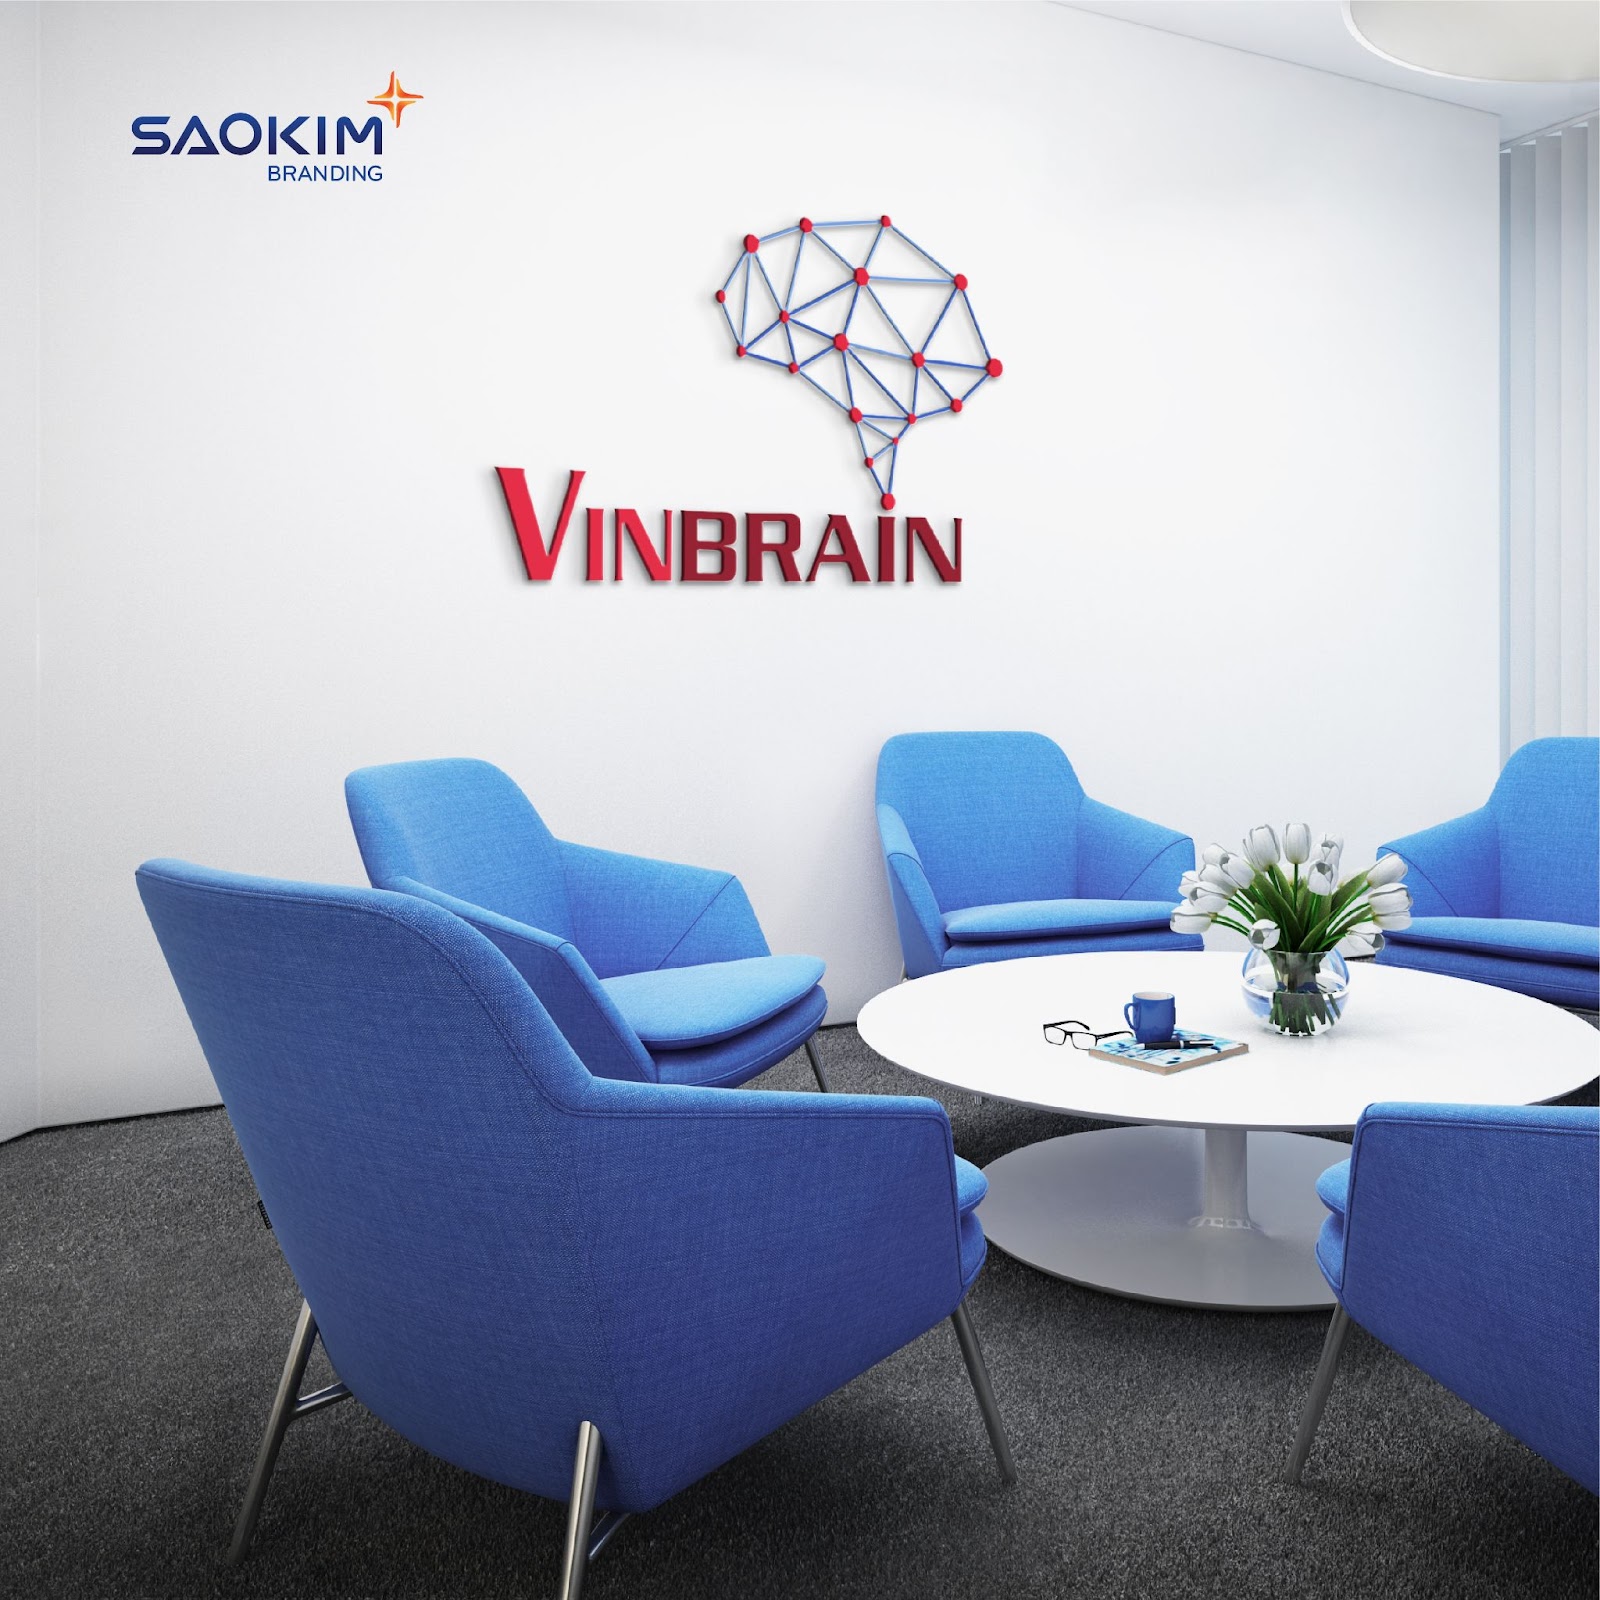 Ứng dụng nhận diện tại văn phòng làm việc của Vinbrain do Sao Kim Branding thiết kế